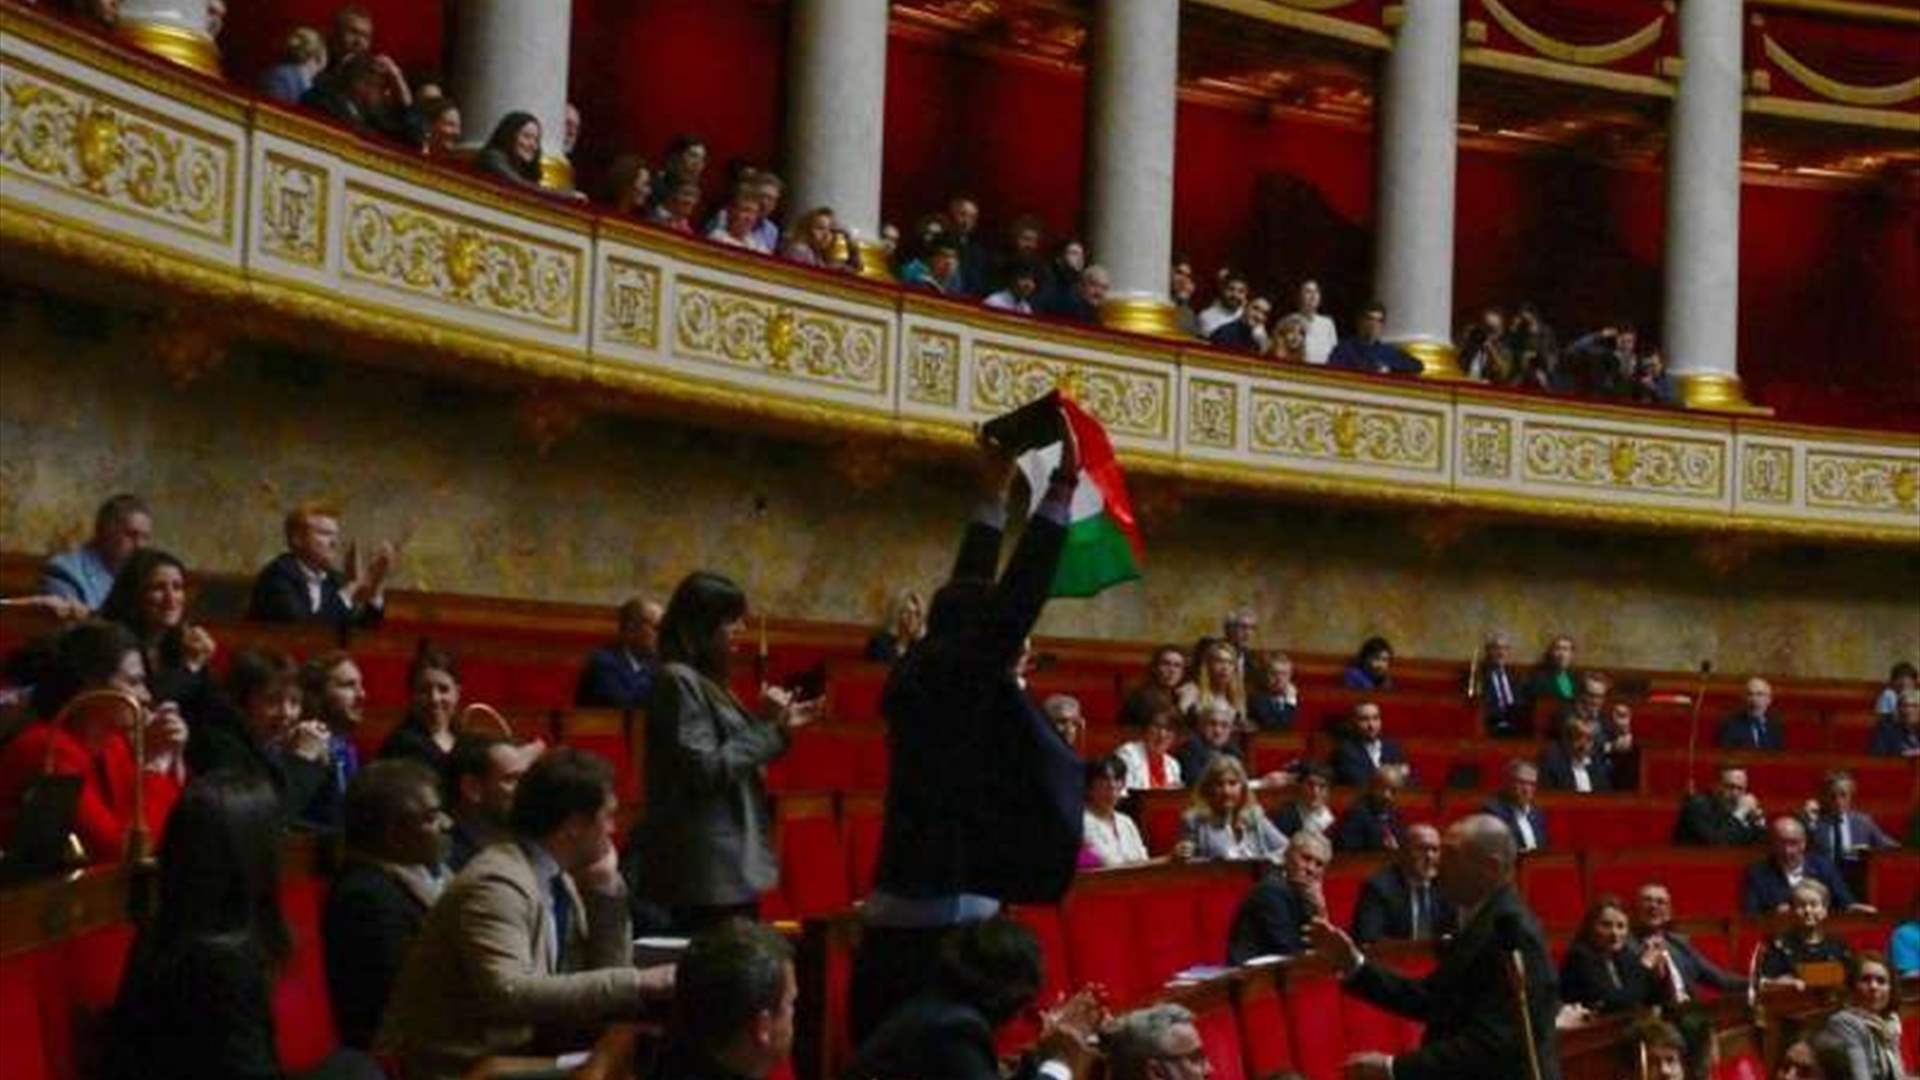 نائب يساري يرفع علم فلسطين في الجمعية الوطنية الفرنسية وتعليق الجلسة